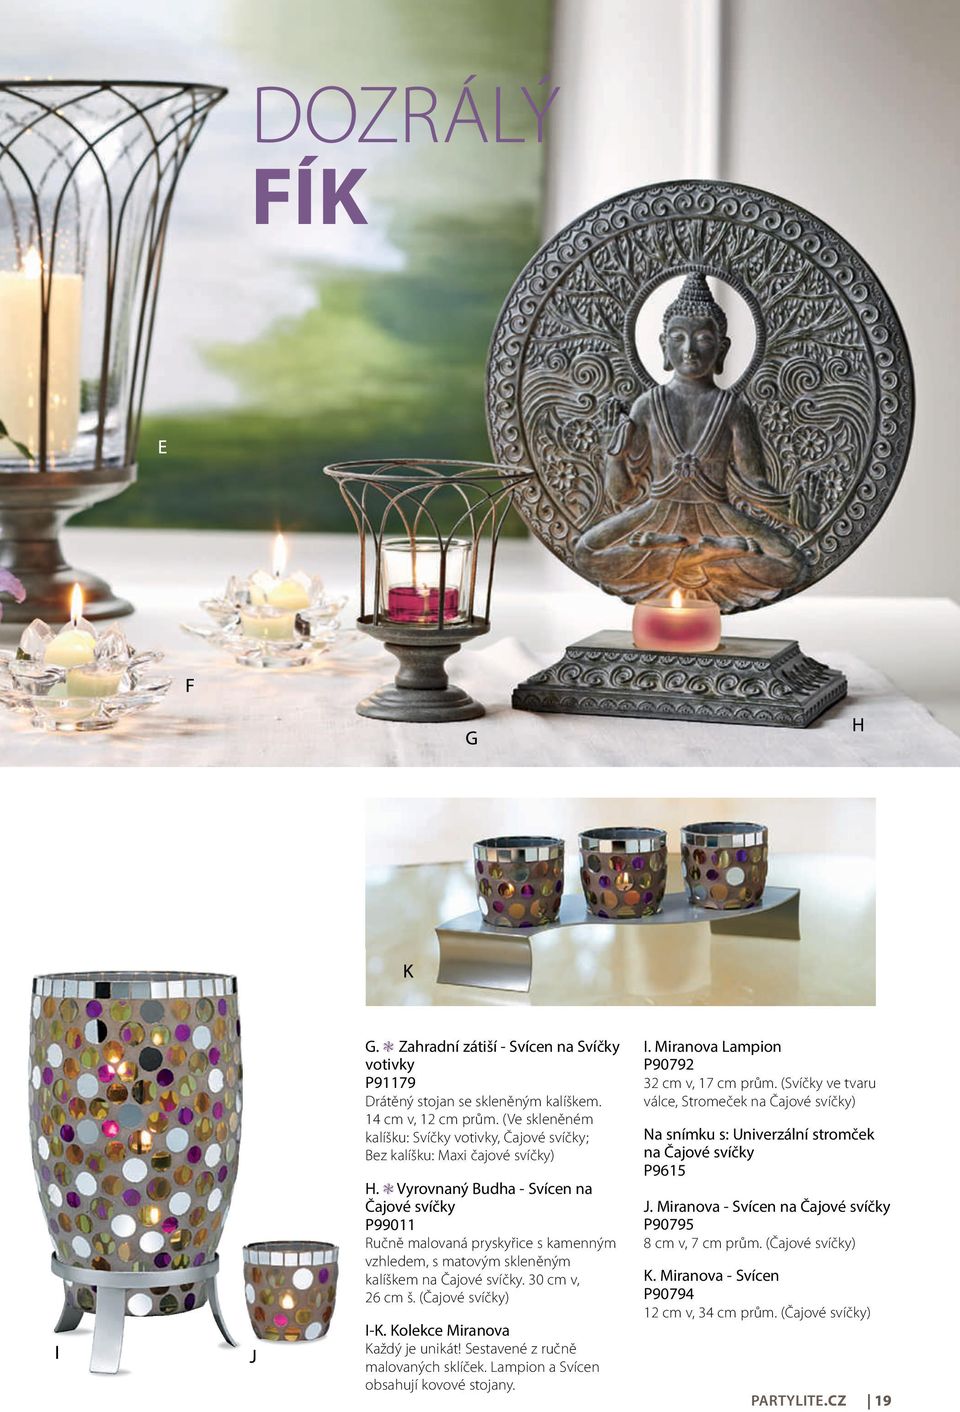 Vyrovnaný Budha - Svícen na Čajové svíčky P99011 ručně malovaná pryskyřice s kamenným vzhledem, s matovým skleněným kalíškem na Čajové svíčky. 30 cm v, 26 cm š. (Čajové svíčky) I-K.